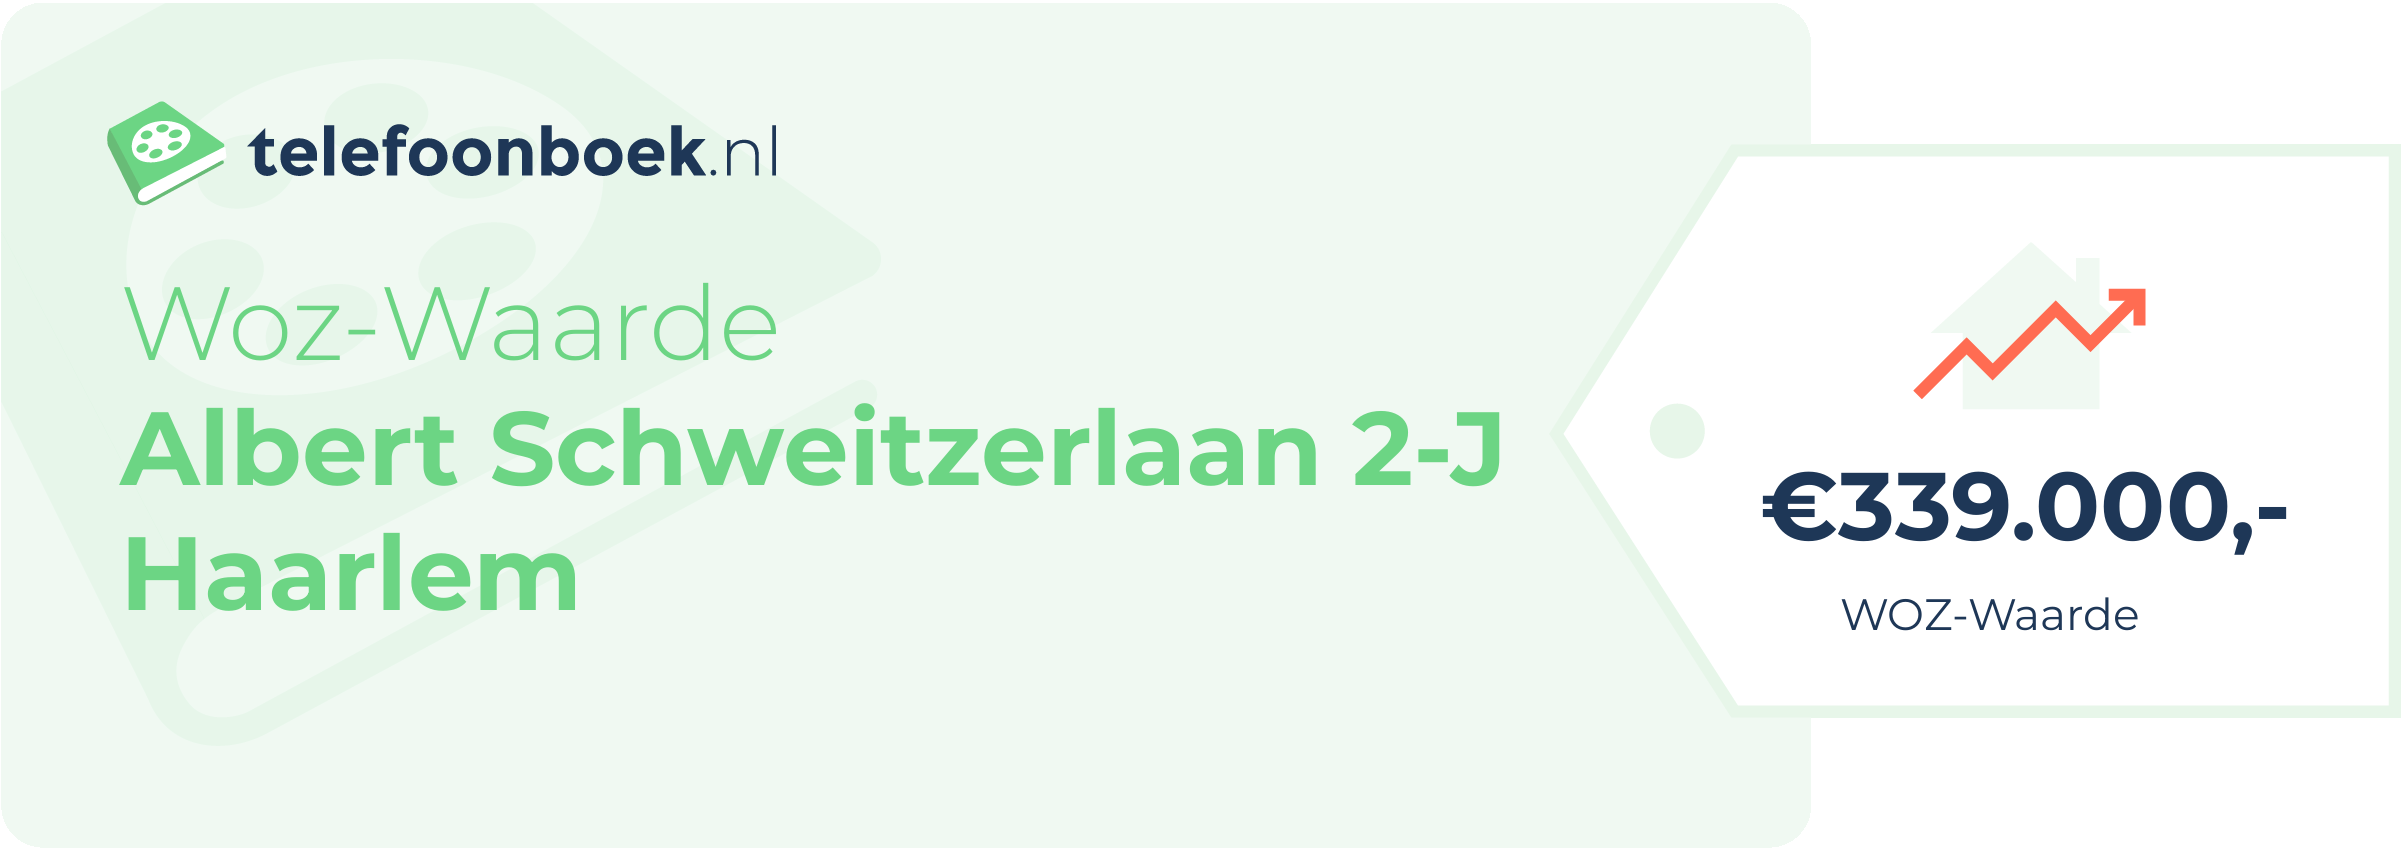 WOZ-waarde Albert Schweitzerlaan 2-J Haarlem